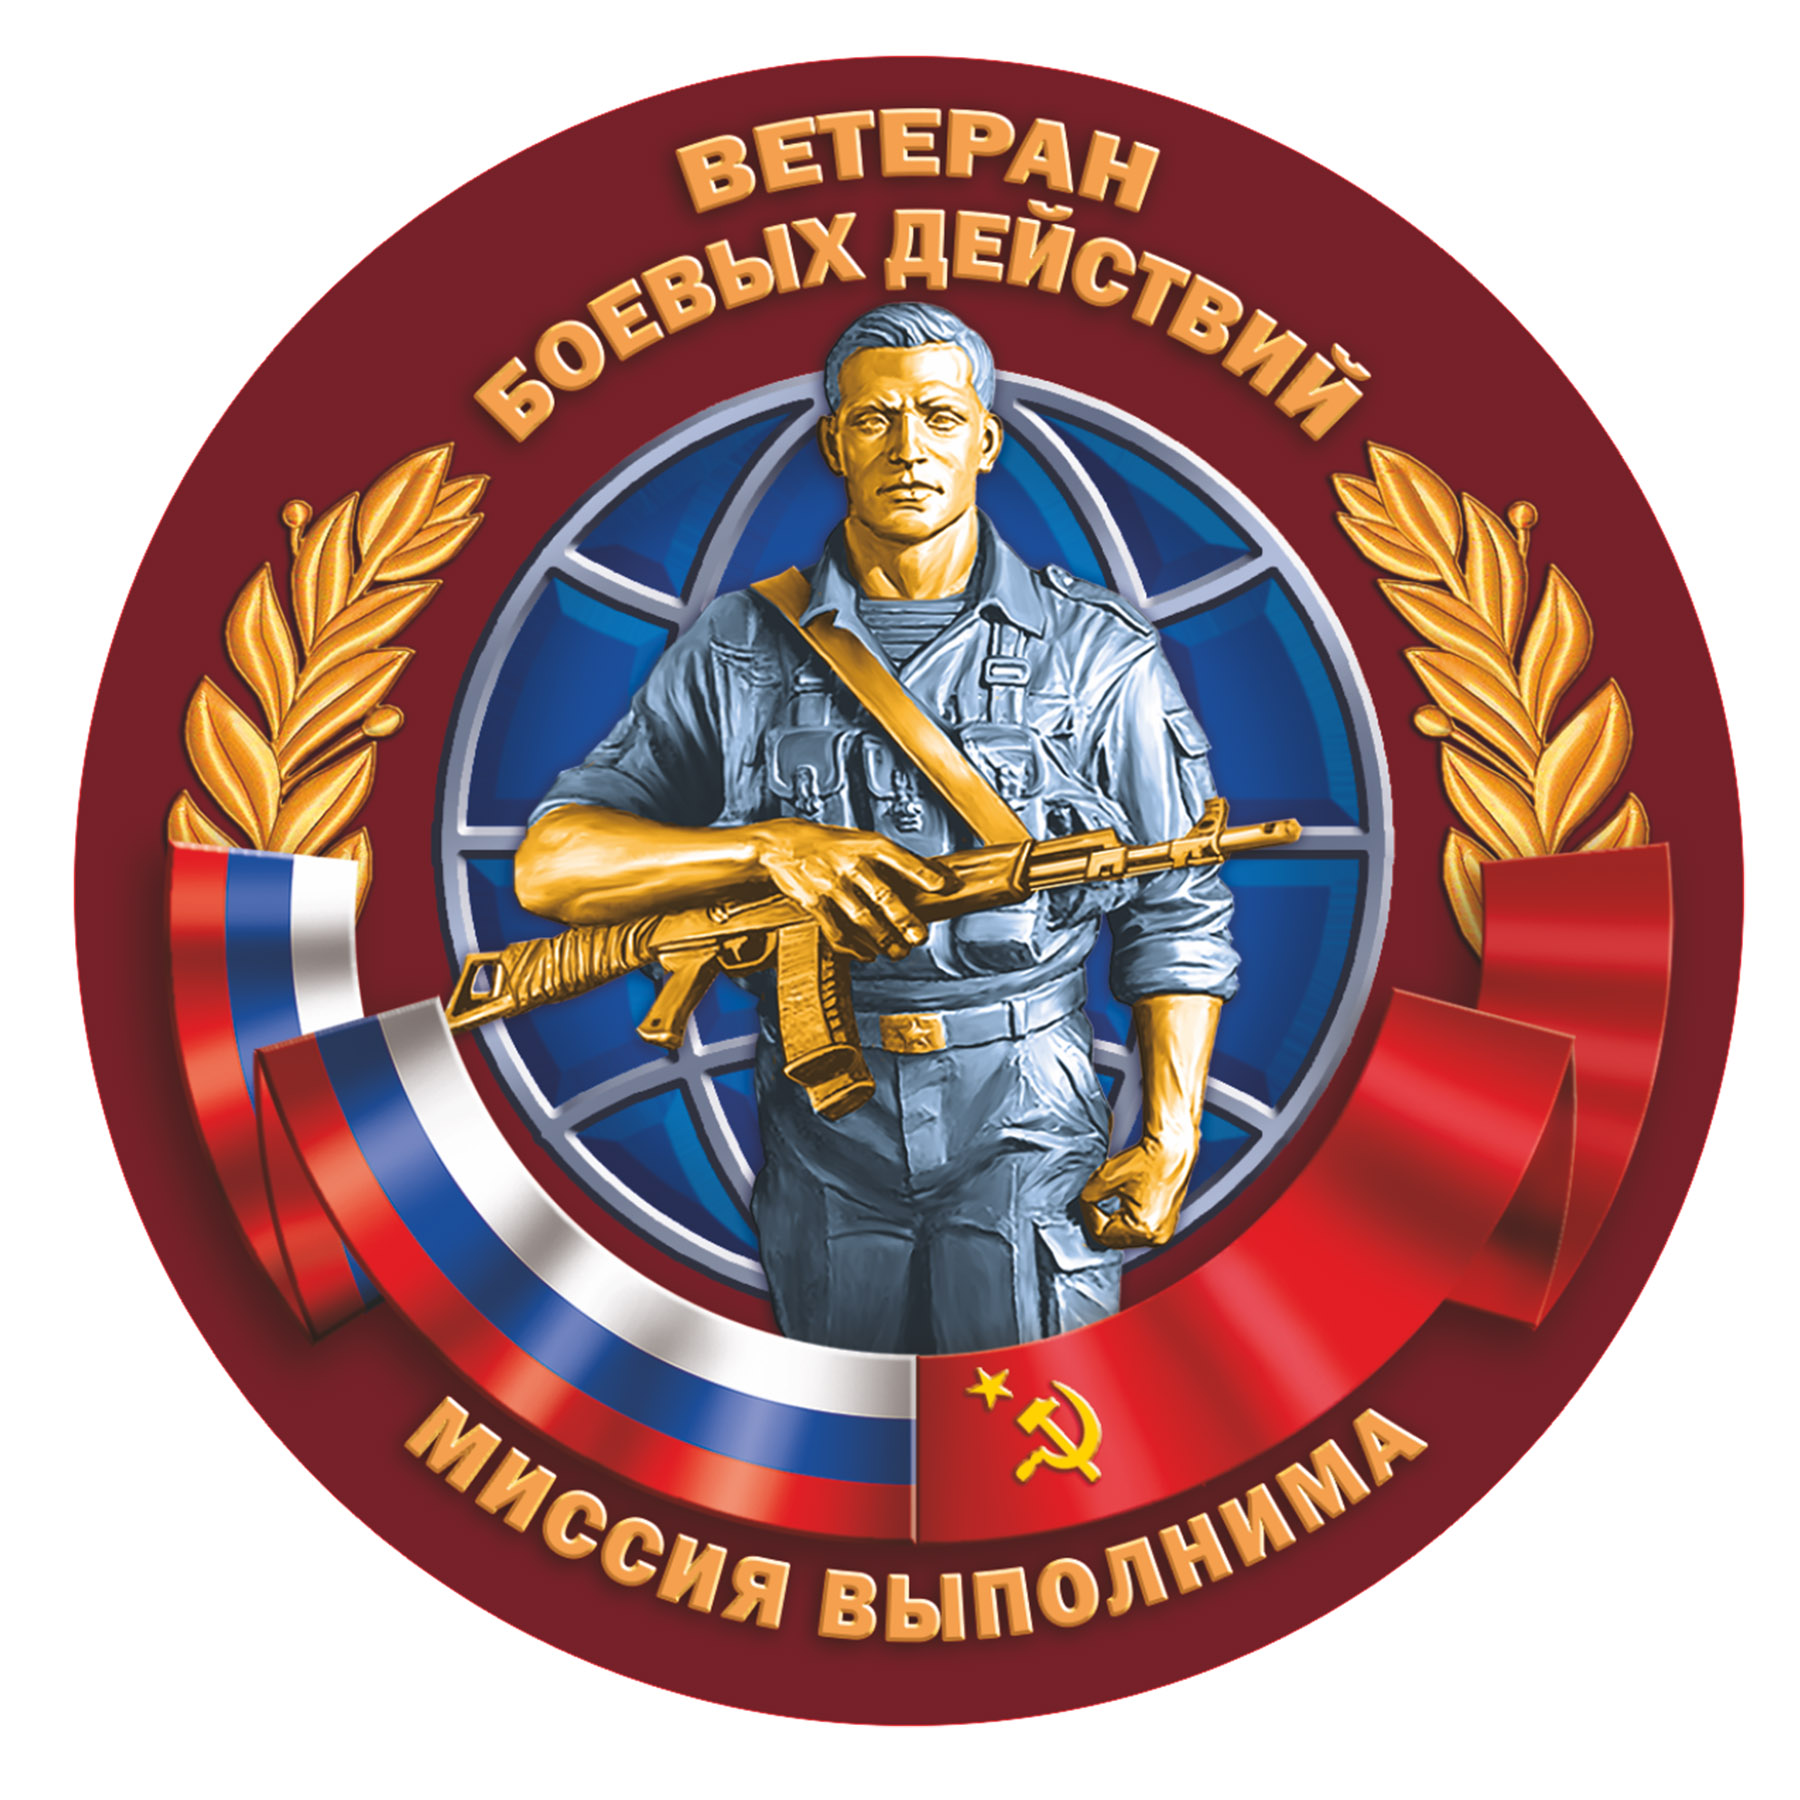 Сувенирная наклейка Ветерану боевых действий по лучшей цене